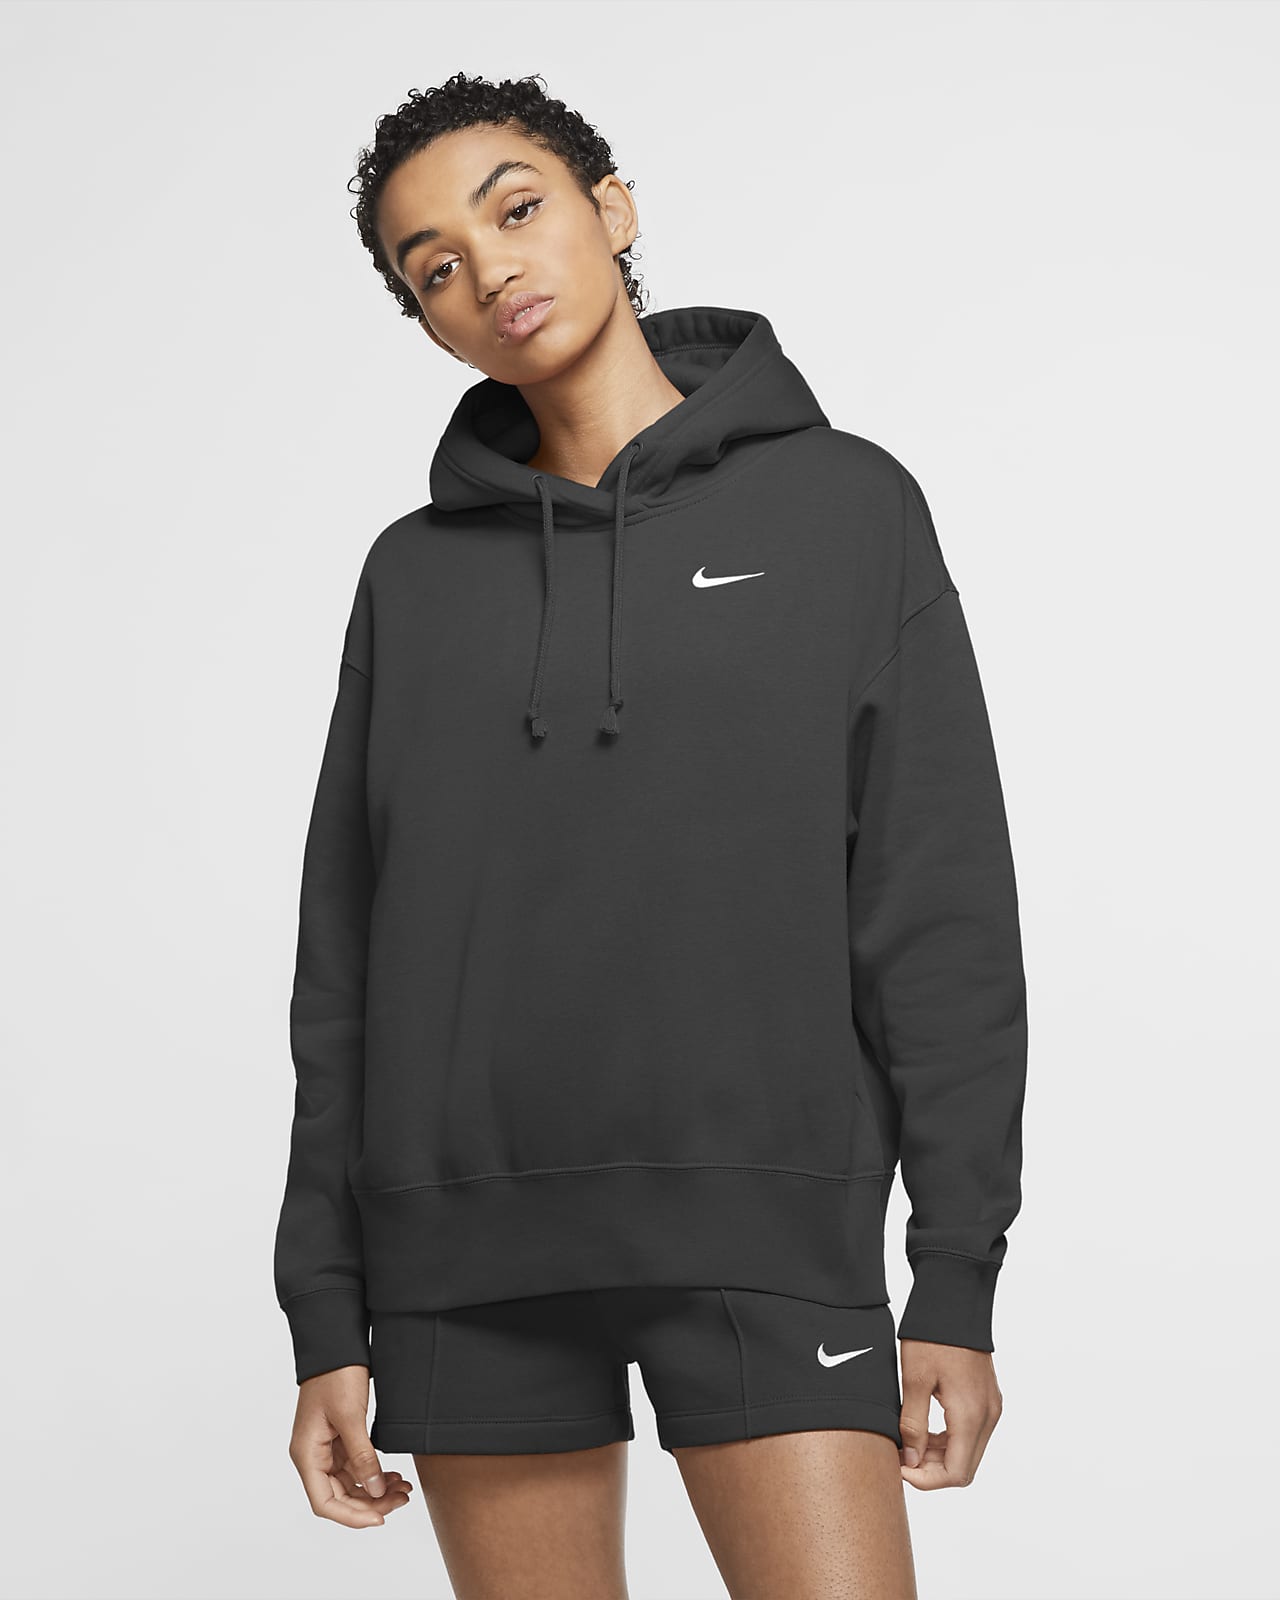 Γυναικεία φλις μπλούζα με κουκούλα Nike Sportswear